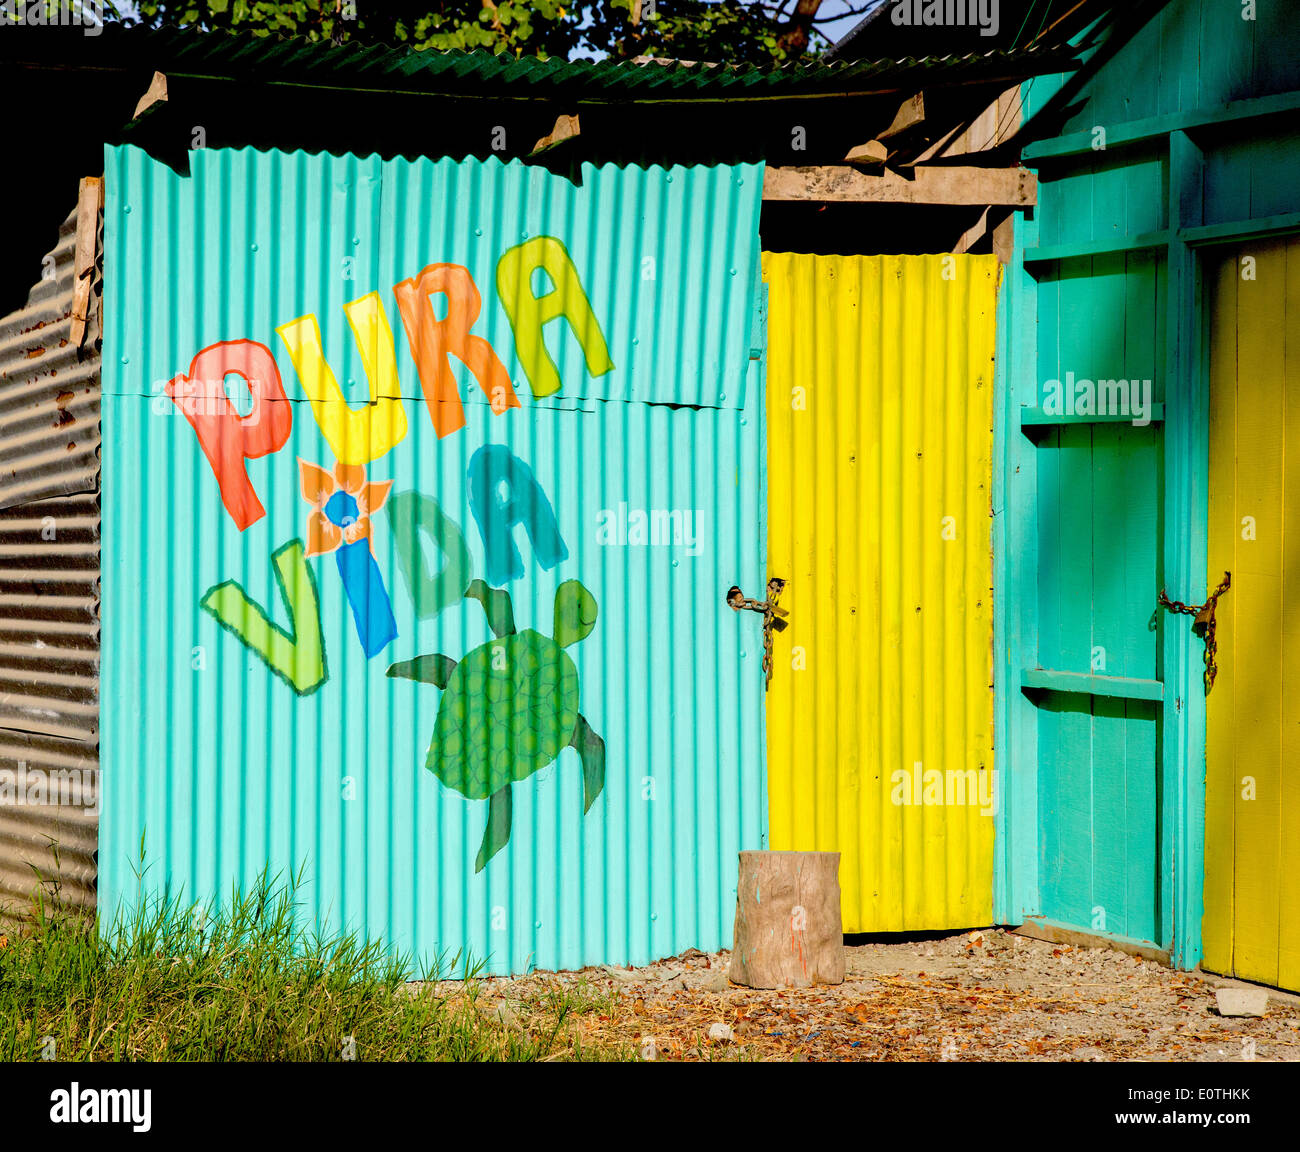 Colorido shack corrugado con Pura Vida, el costarricense Tico's maxim saludo y forma de vida Foto de stock